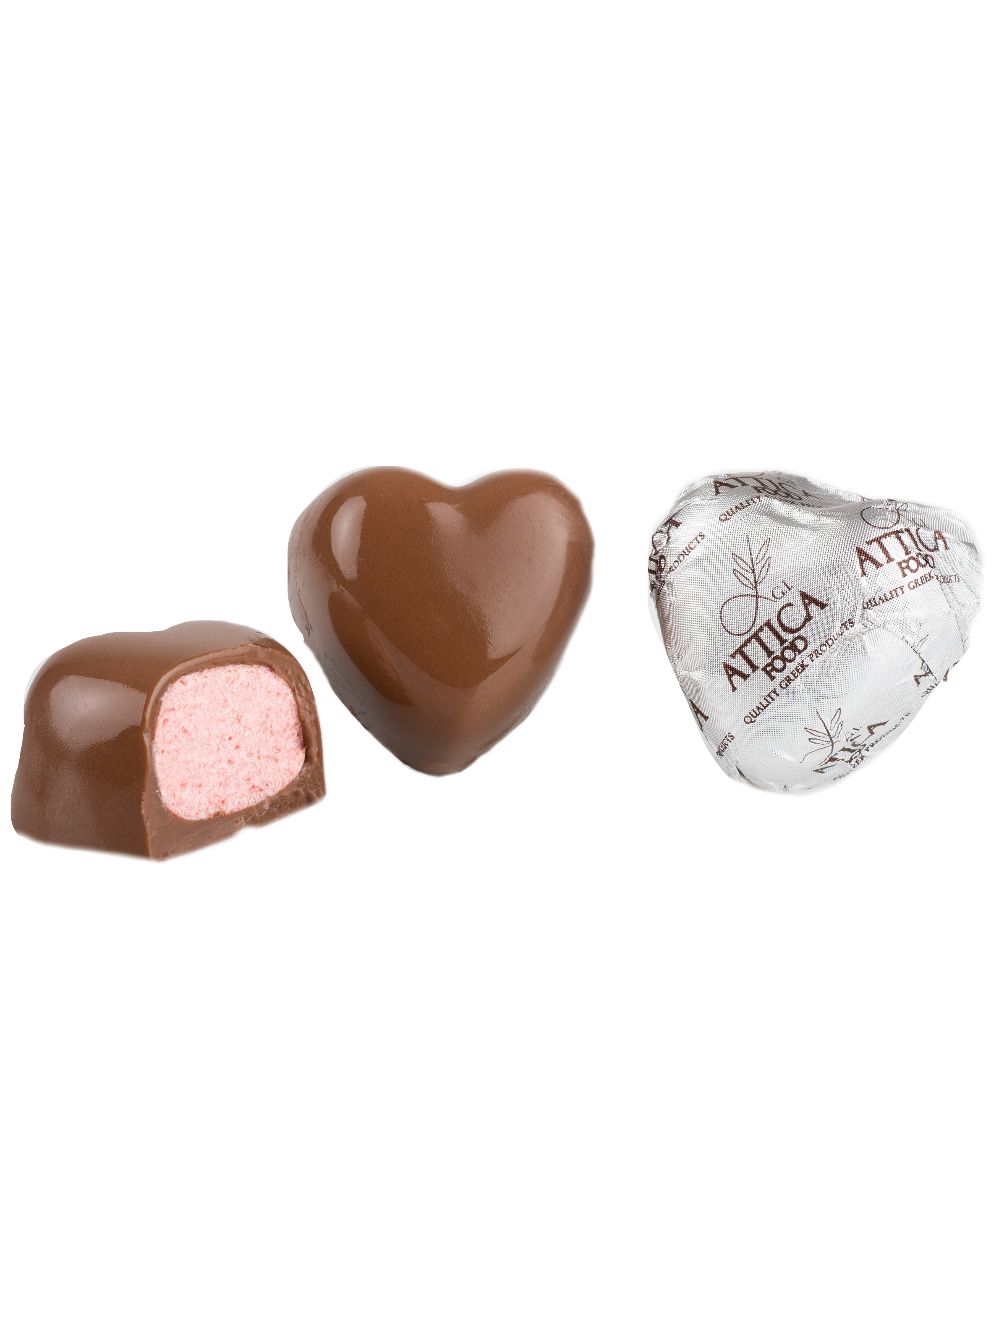 Шоколадные конфеты с начинкой из клубничного мусса